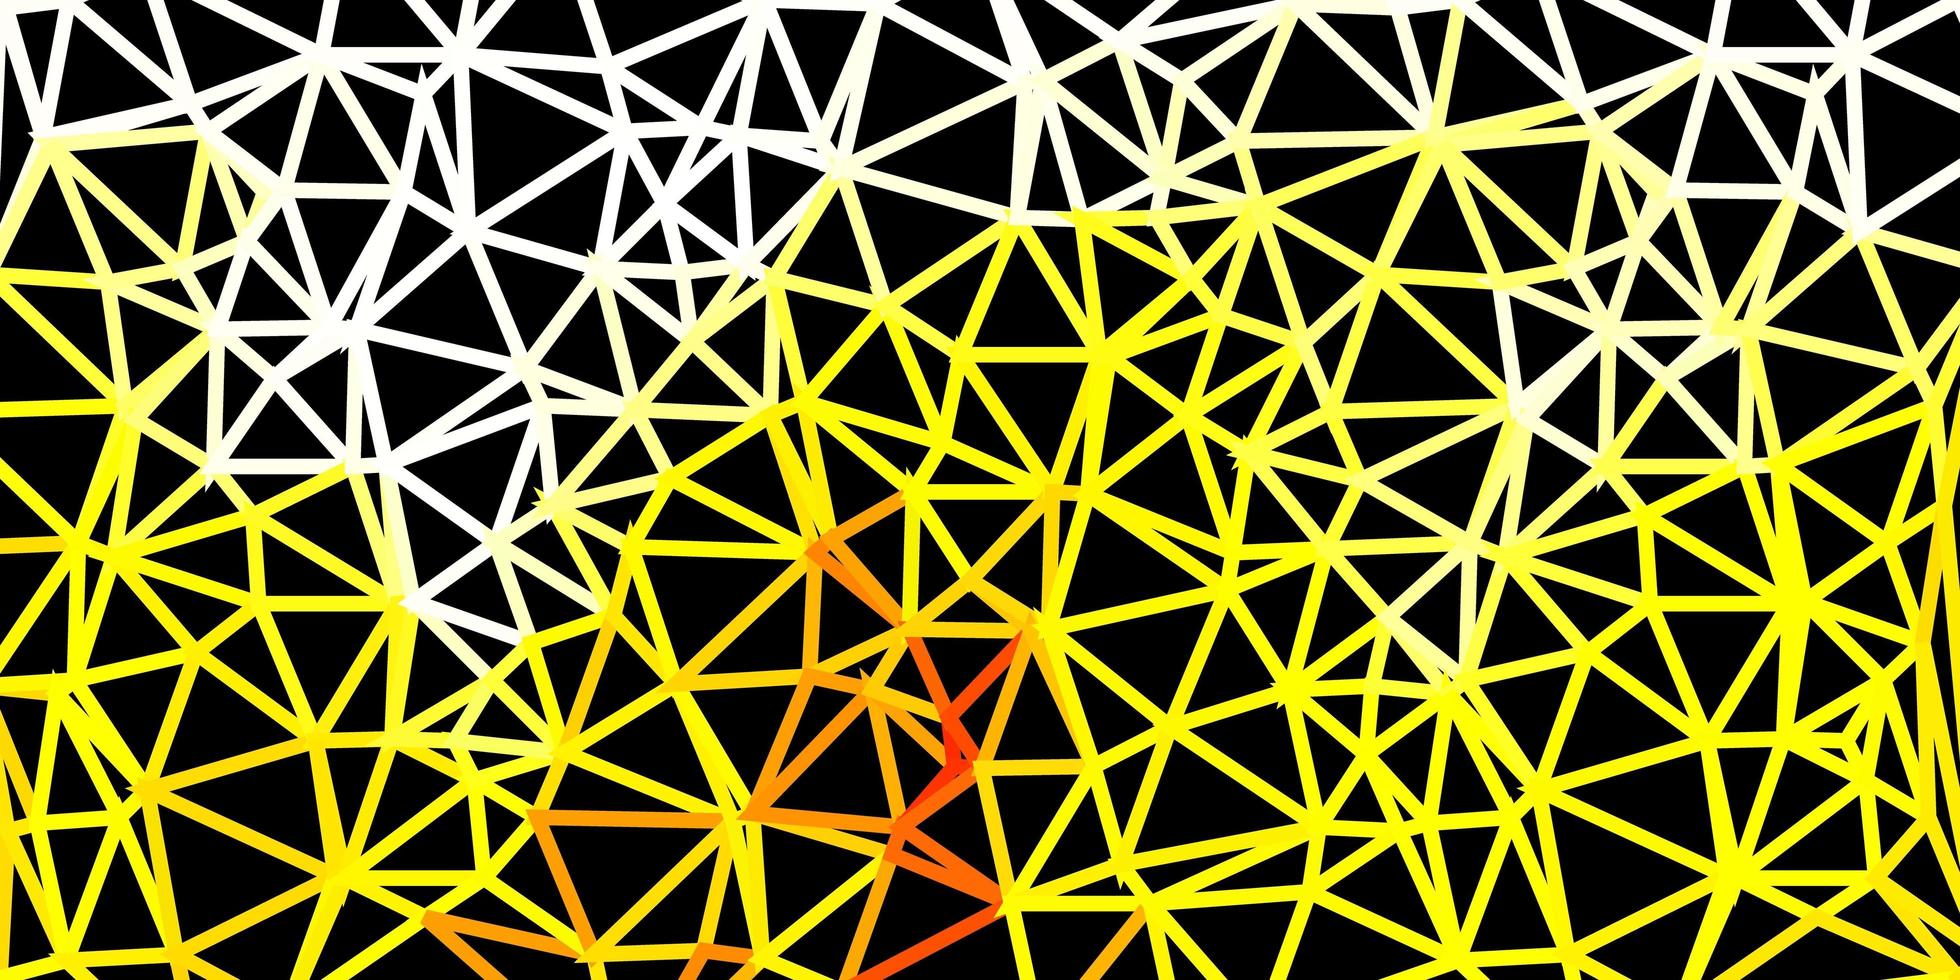 ljus orange vektor polygonal bakgrund.